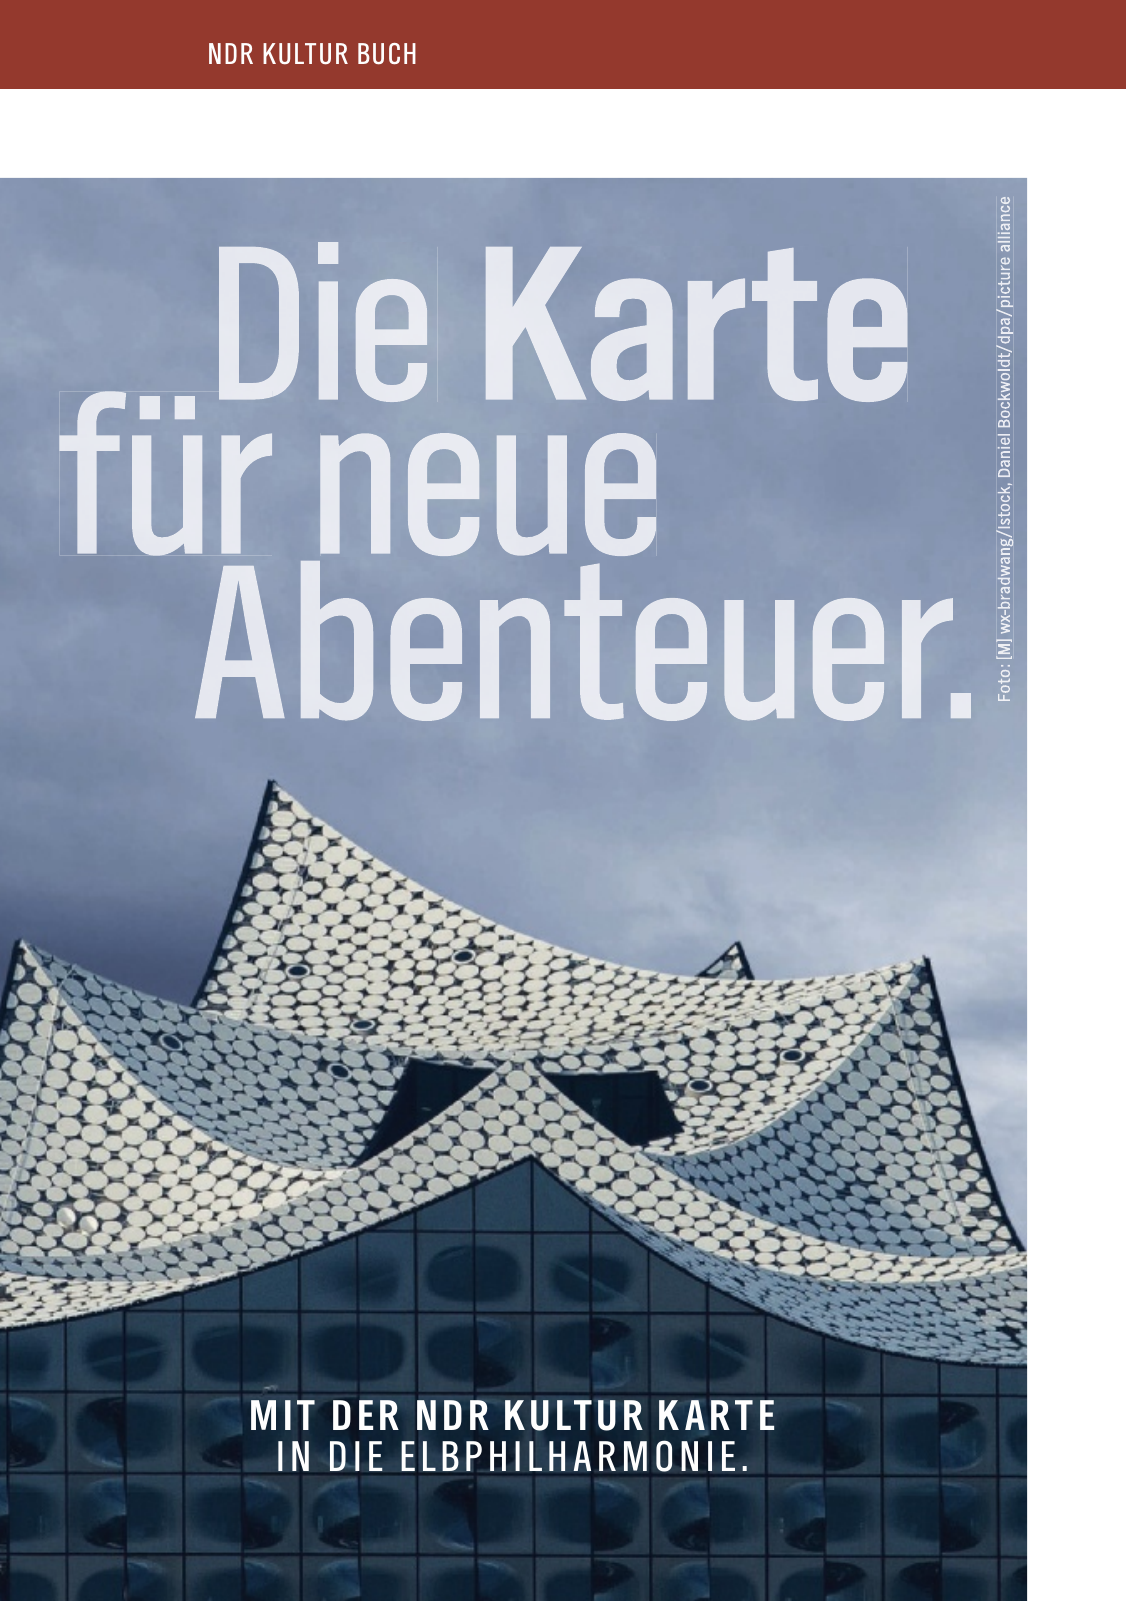 Vorschau NDR Kultur Buch 2017 Seite 40